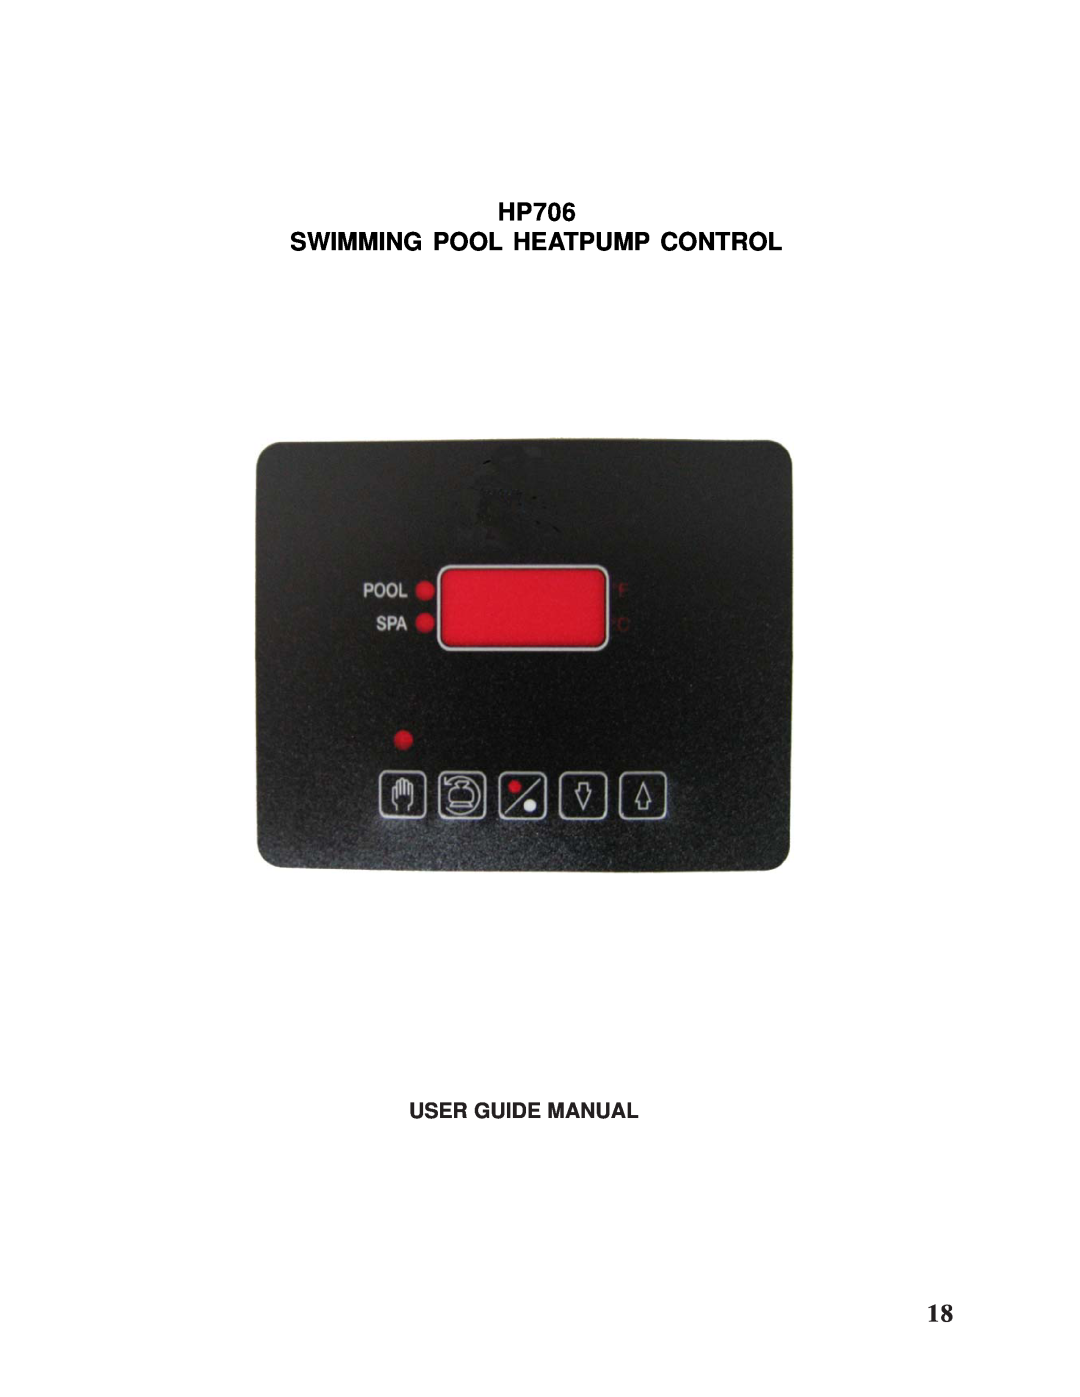 Taylor Pool Heat Pump owner manual HP706 SWIMMING POOL HEATPUMP CONTROL, User Guide Manual 